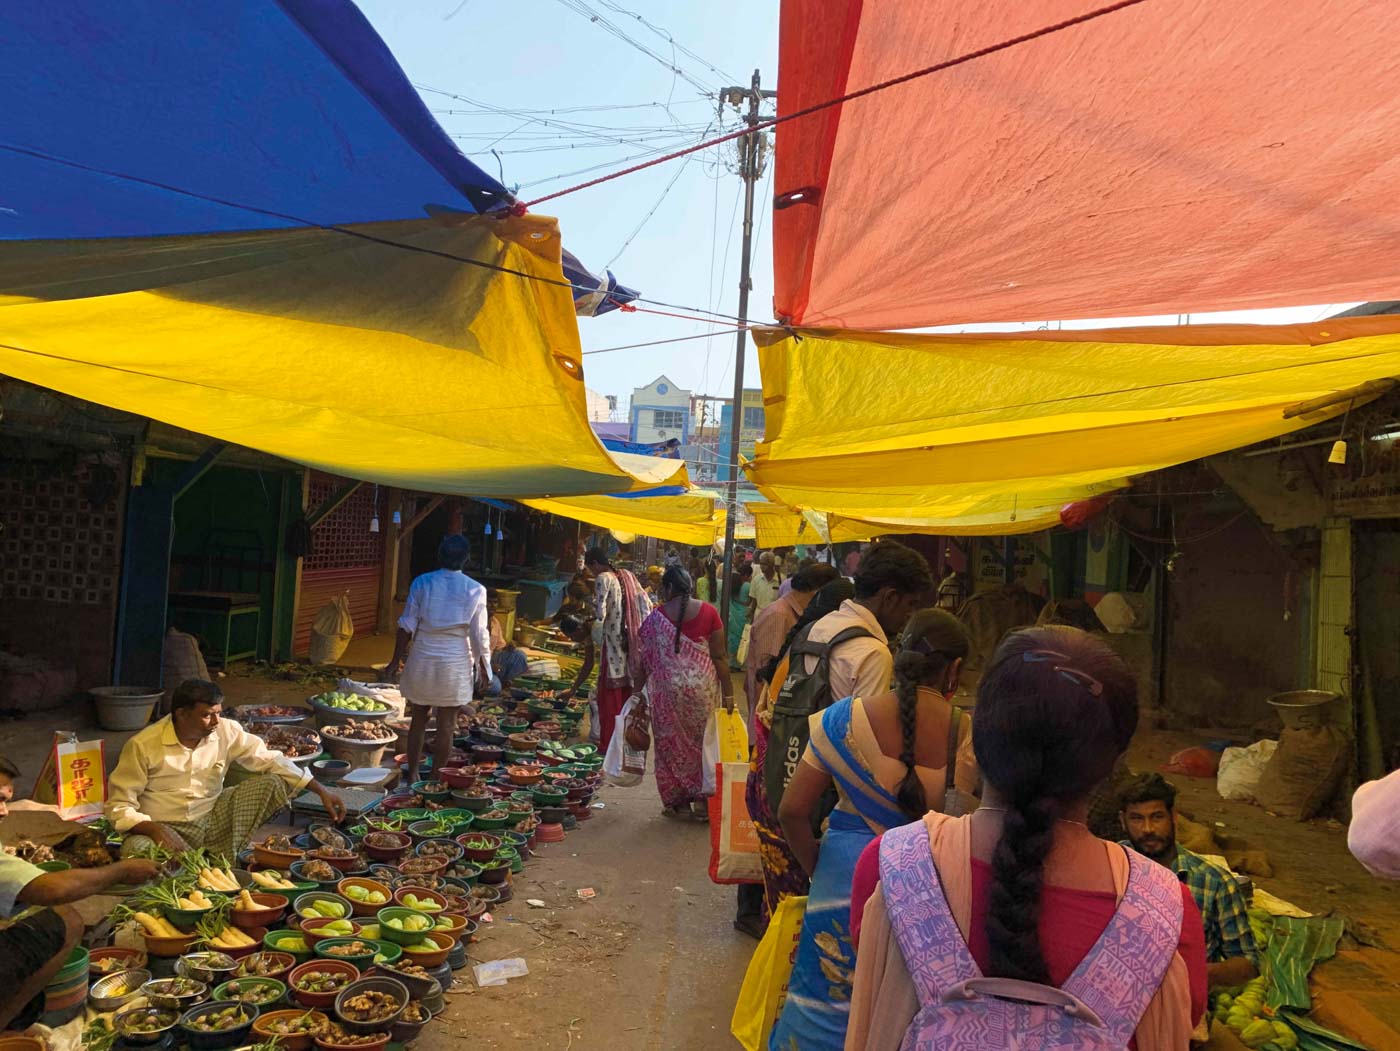 Shot by Danusri, Location: Gandhi Market, Trichy